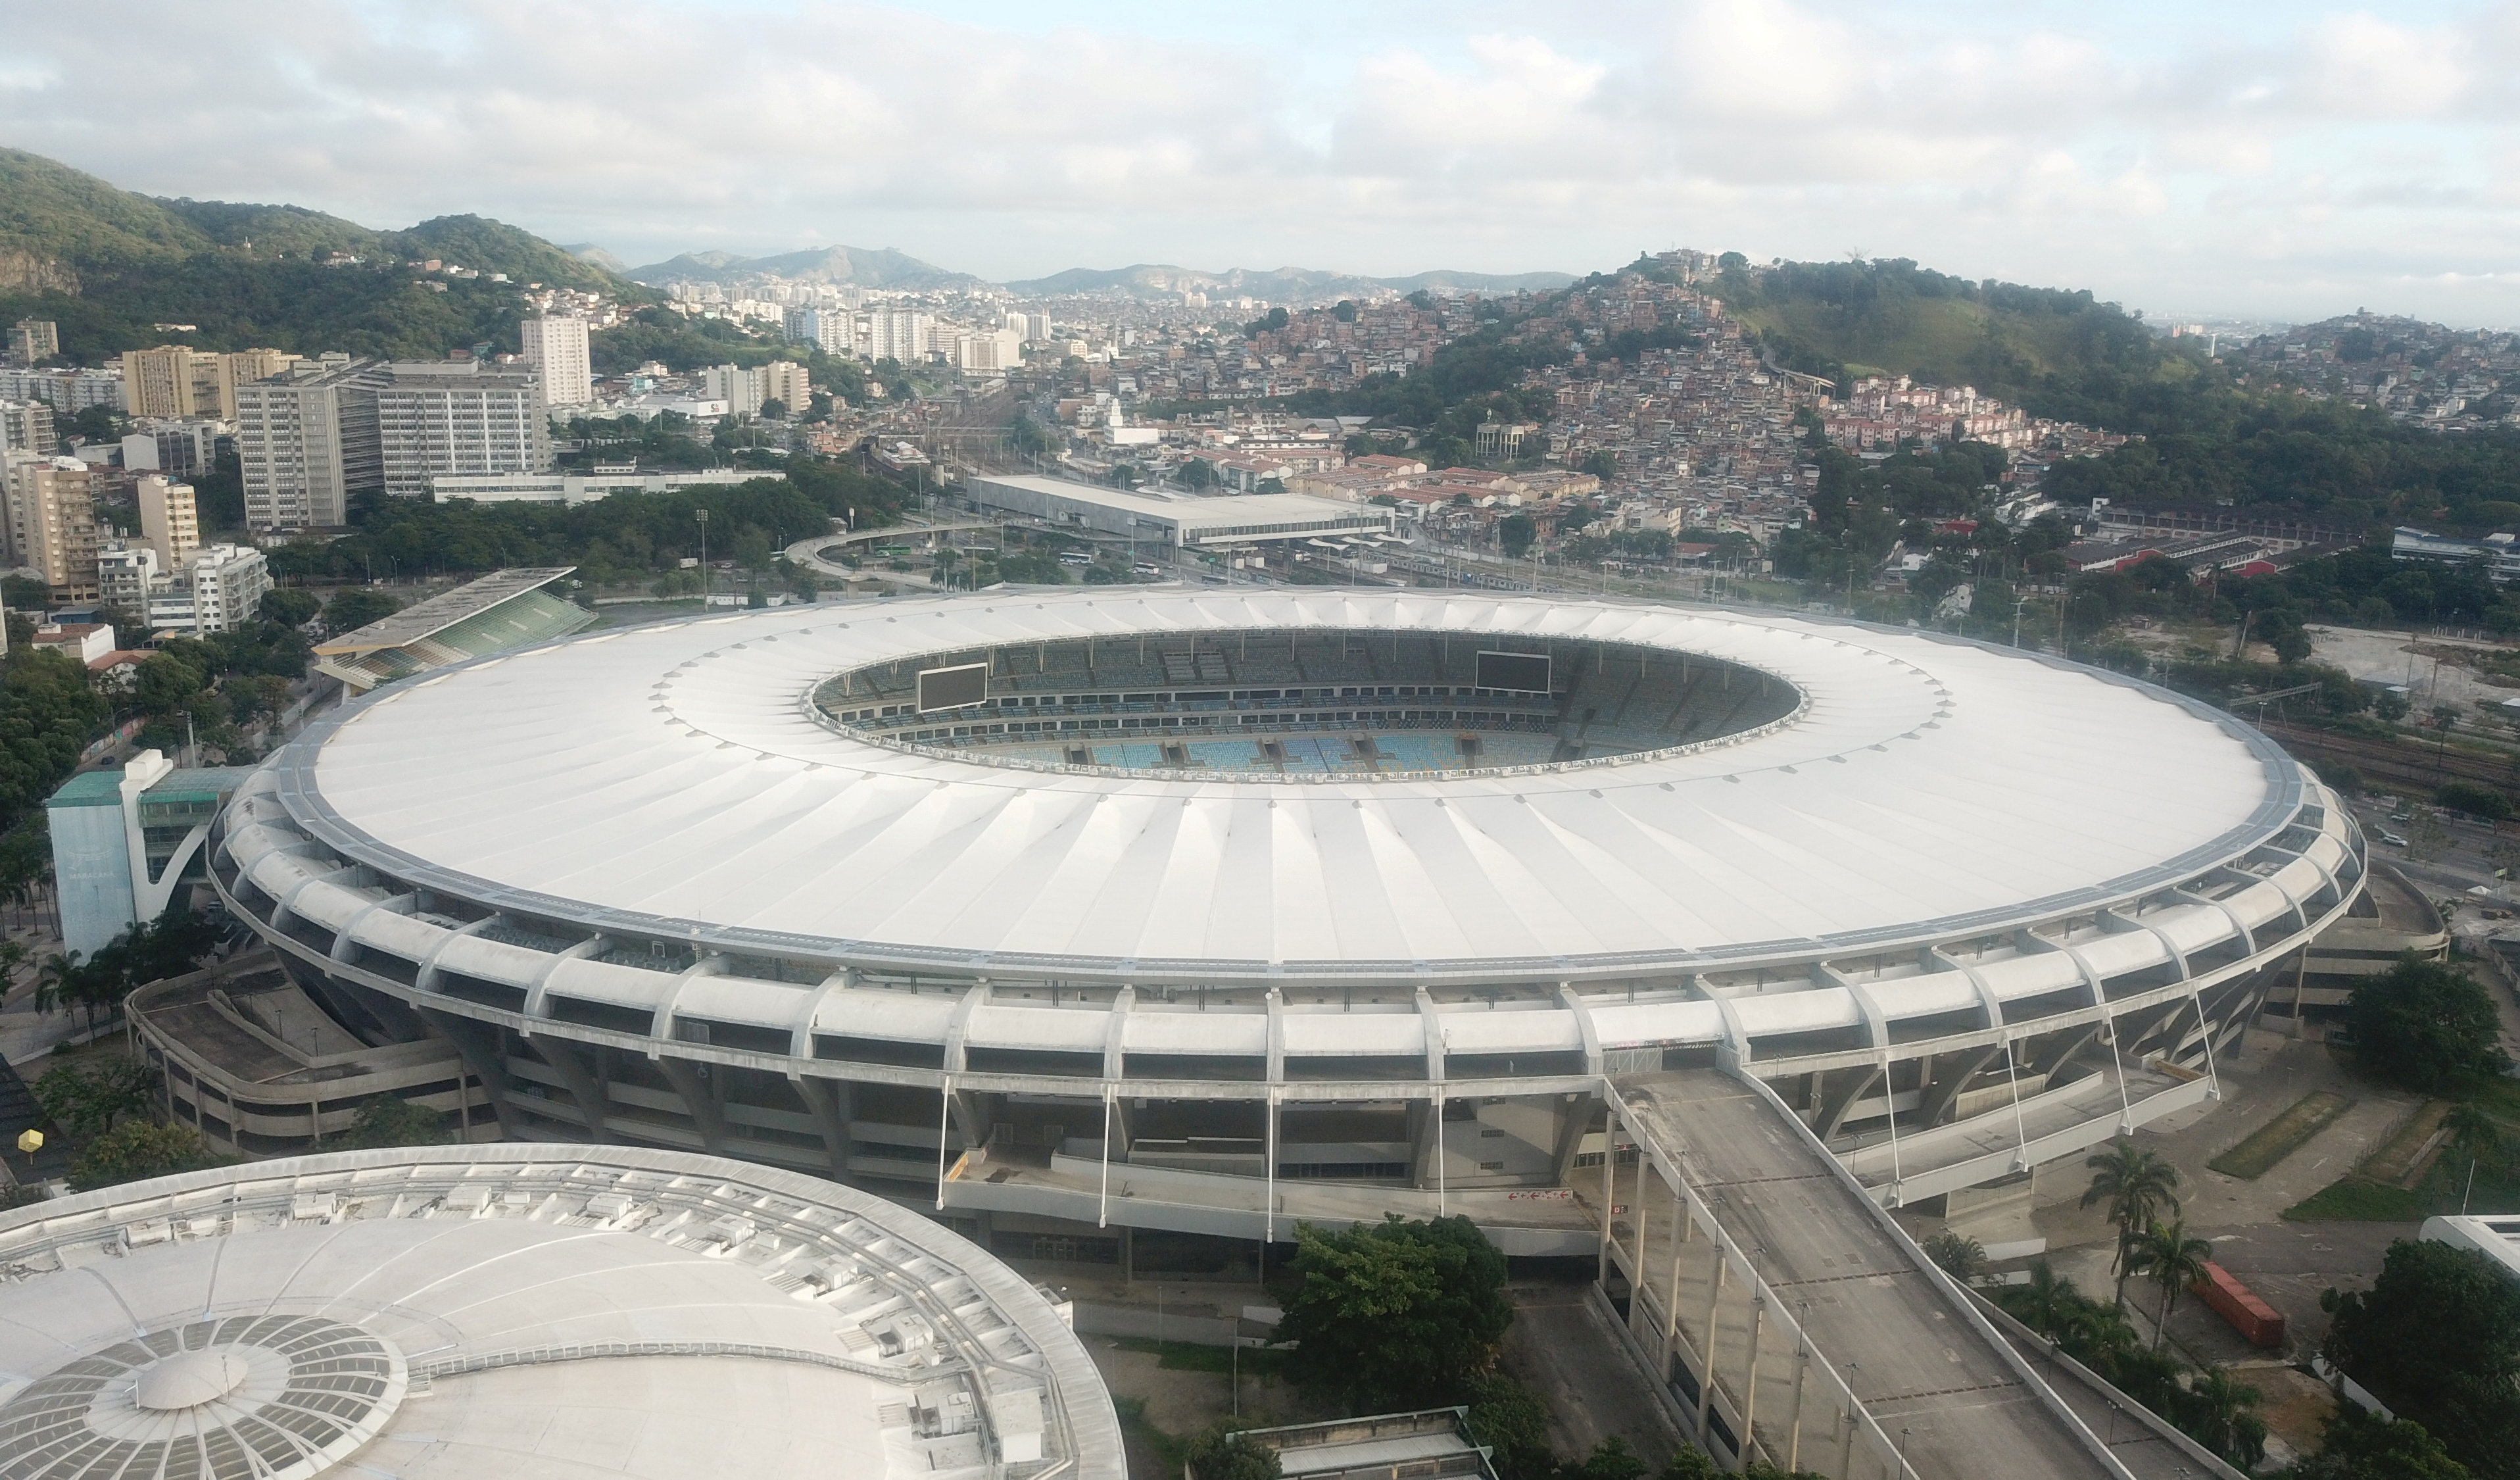 Habrá 5500 personas en la final entre Argentina y Brasil que se disputará en el Maracaná (Foto: Reuters)